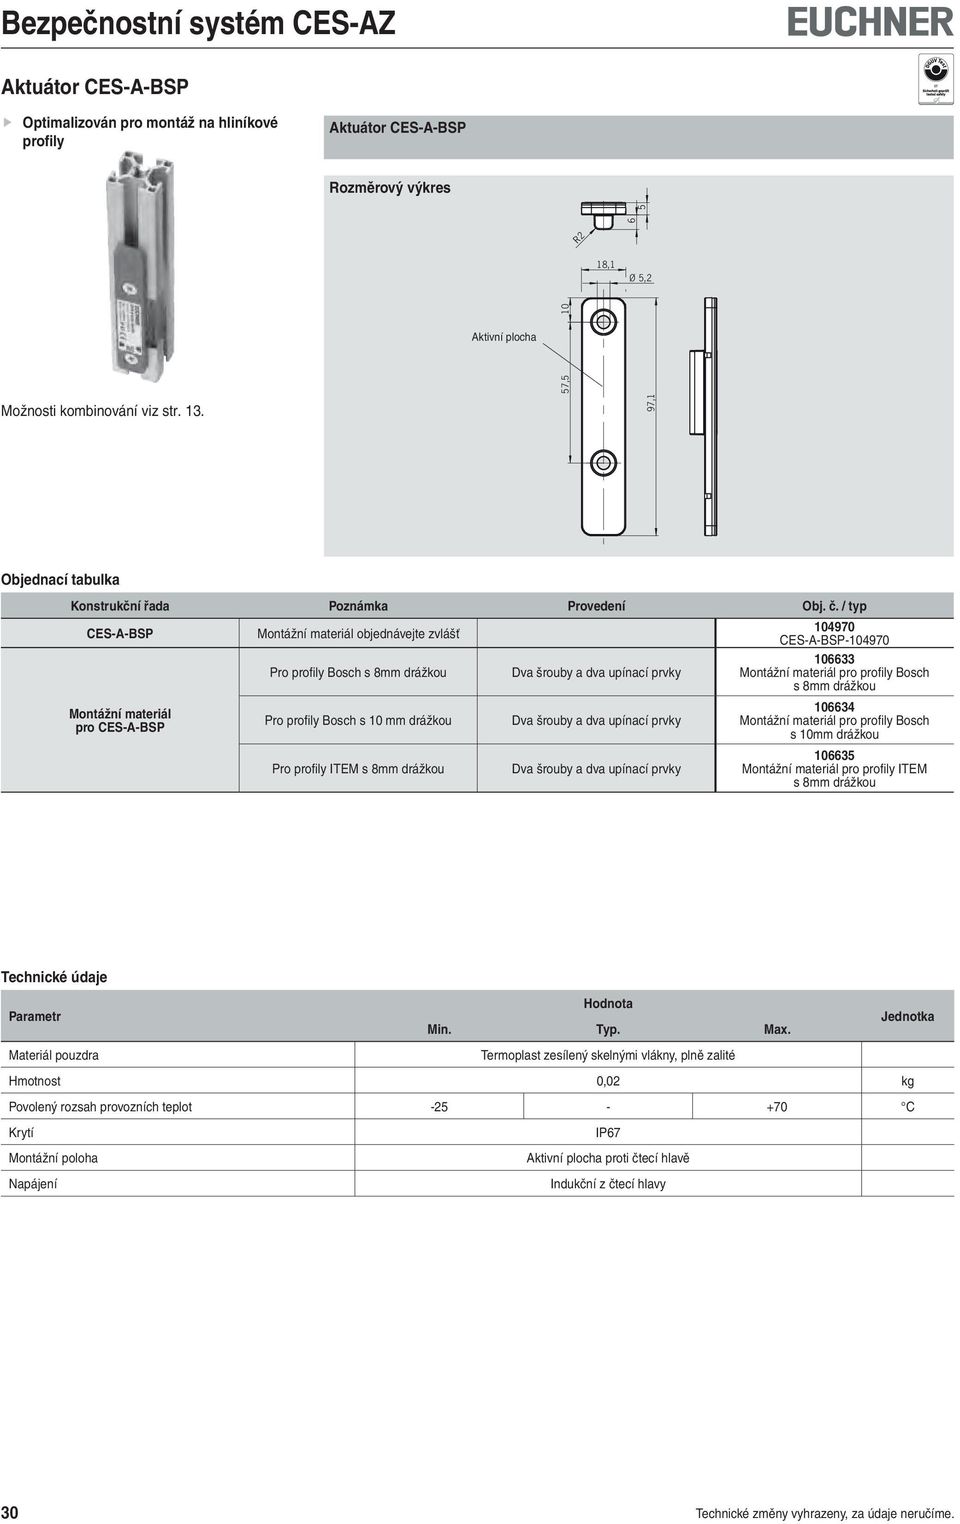 Montážní materiál pro CES-A-BSP Pro profi ly Bosch s 10 mm drážkou Pro profily ITEM s 8mm drážkou Dva šrouby a dva upínací prvky Dva šrouby a dva upínací prvky 1034